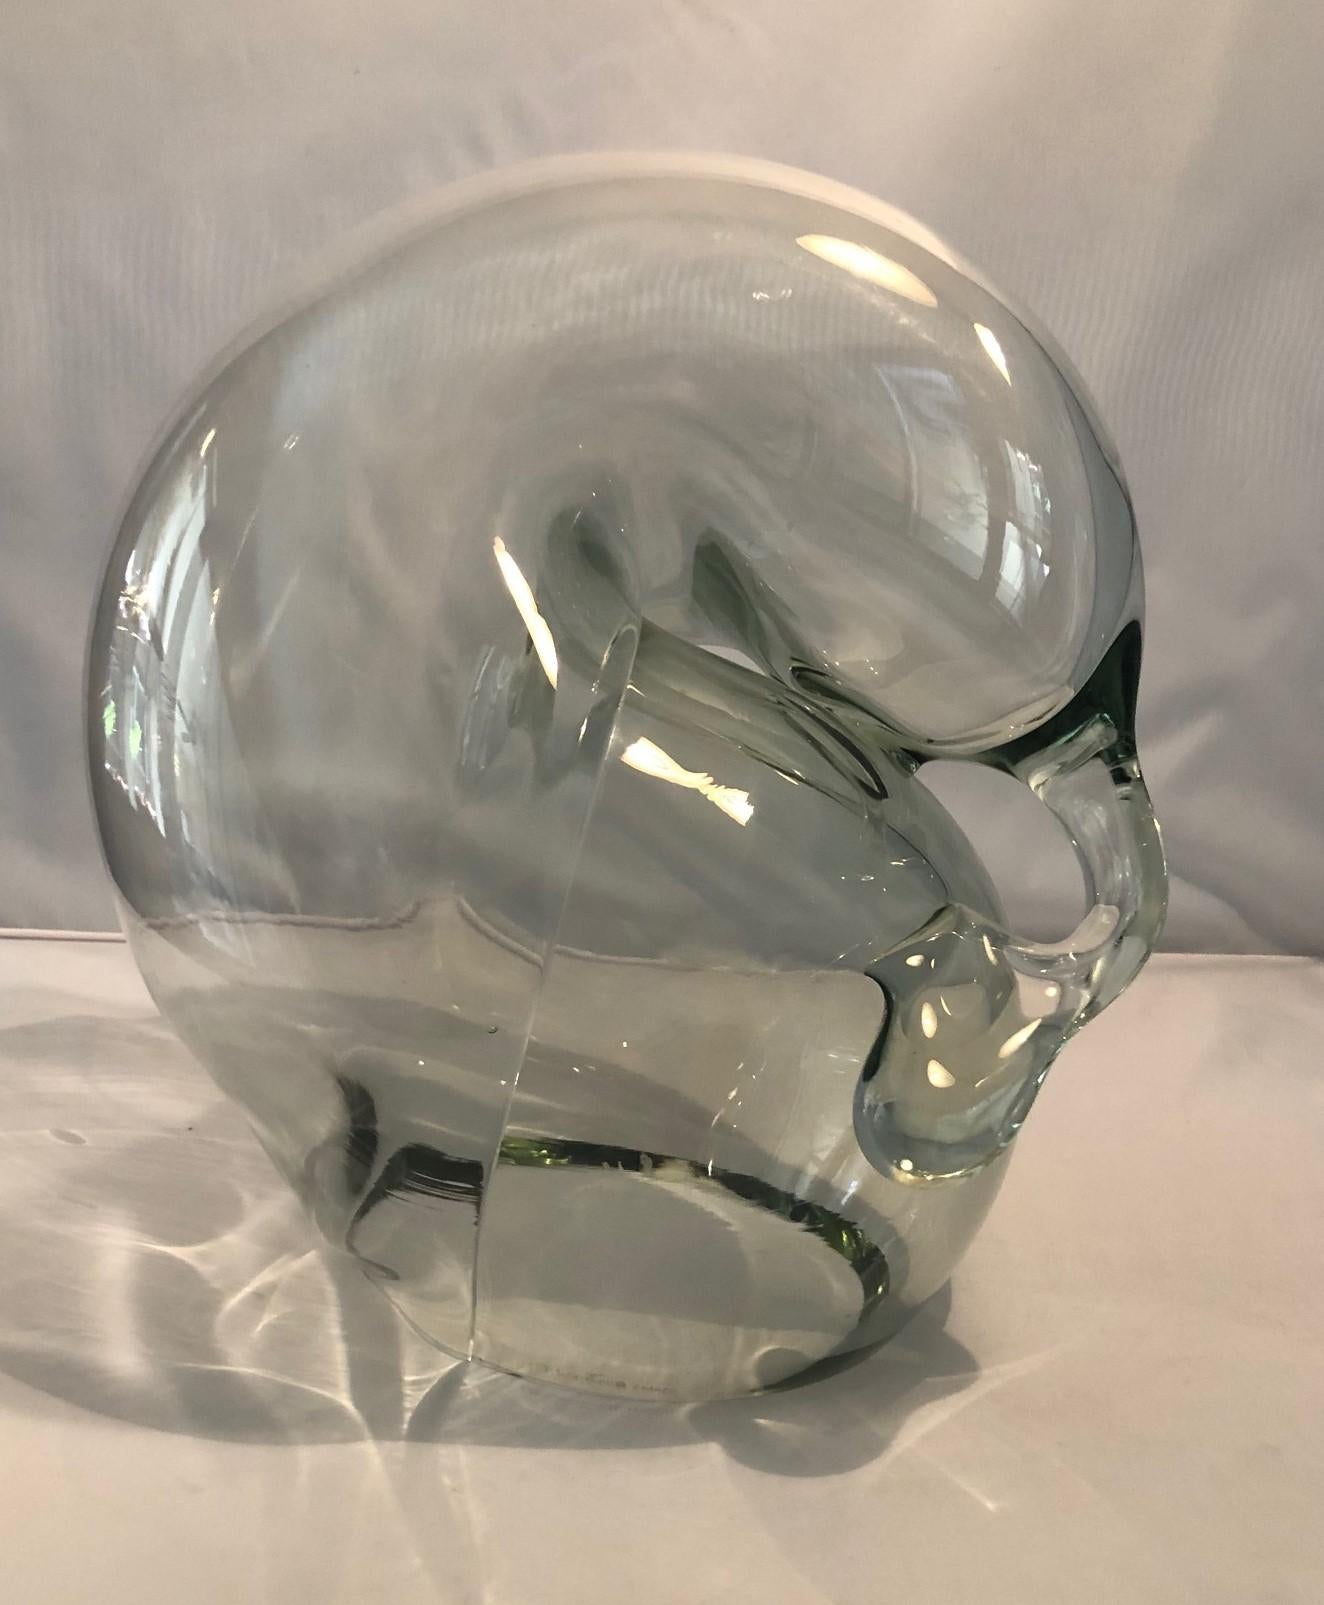 Grande sculpture orbe en verre transparent de John Bingham, vers les années 1980. Cette sculpture orbe en verre soufflé à la main a un design biomorphique de forme libre et est en très bon état, sans éclats ni fissures. La pièce mesure environ 10